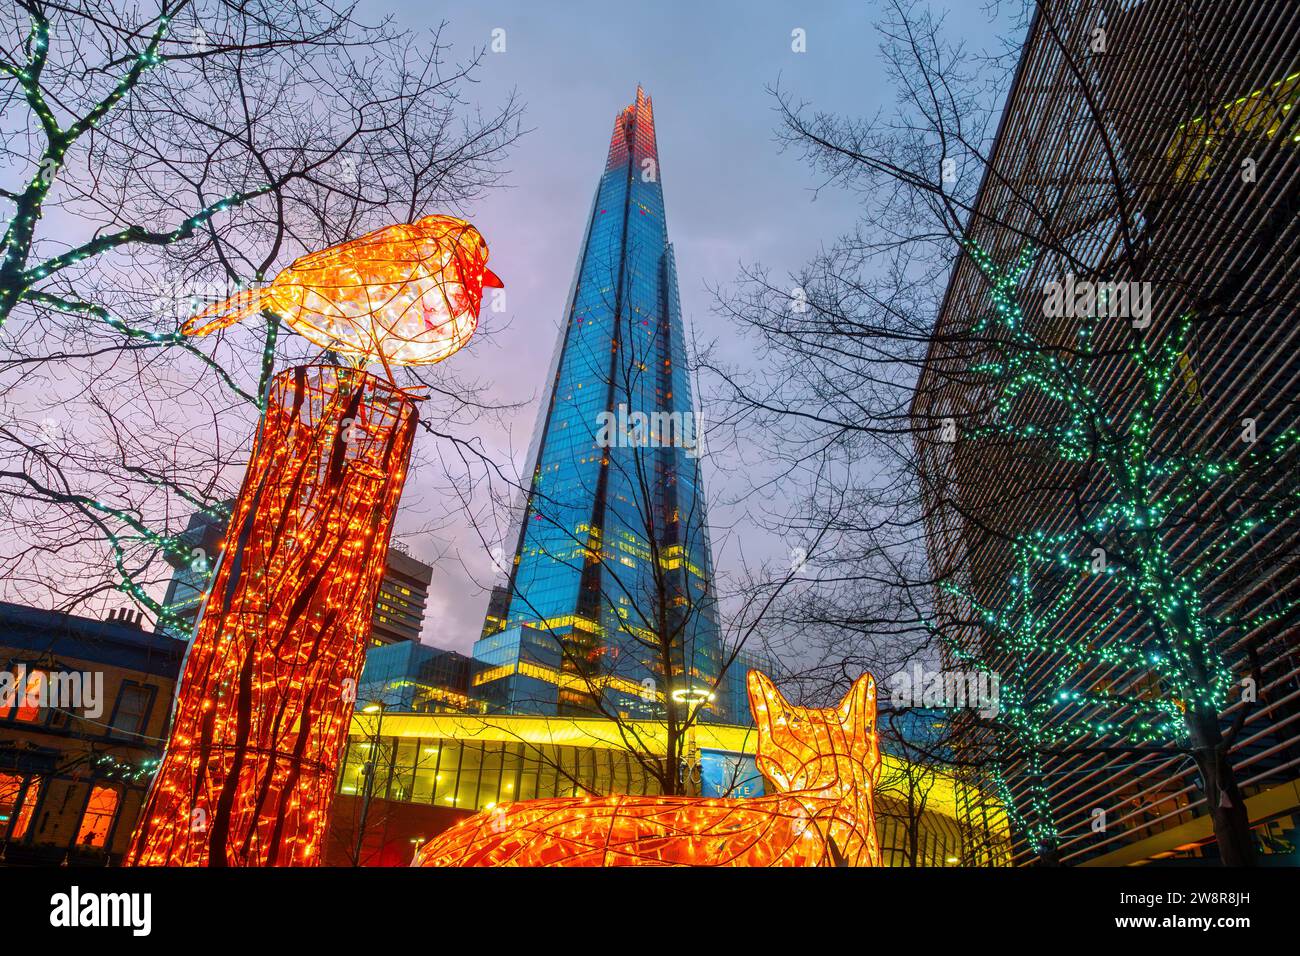 Londra, Inghilterra, Regno Unito - 24 dicembre 2022: Vista del famoso grattacielo Shard Building e delle tradizionali decorazioni natalizie per volpi e uccelli del Regno Unito, illum Foto Stock